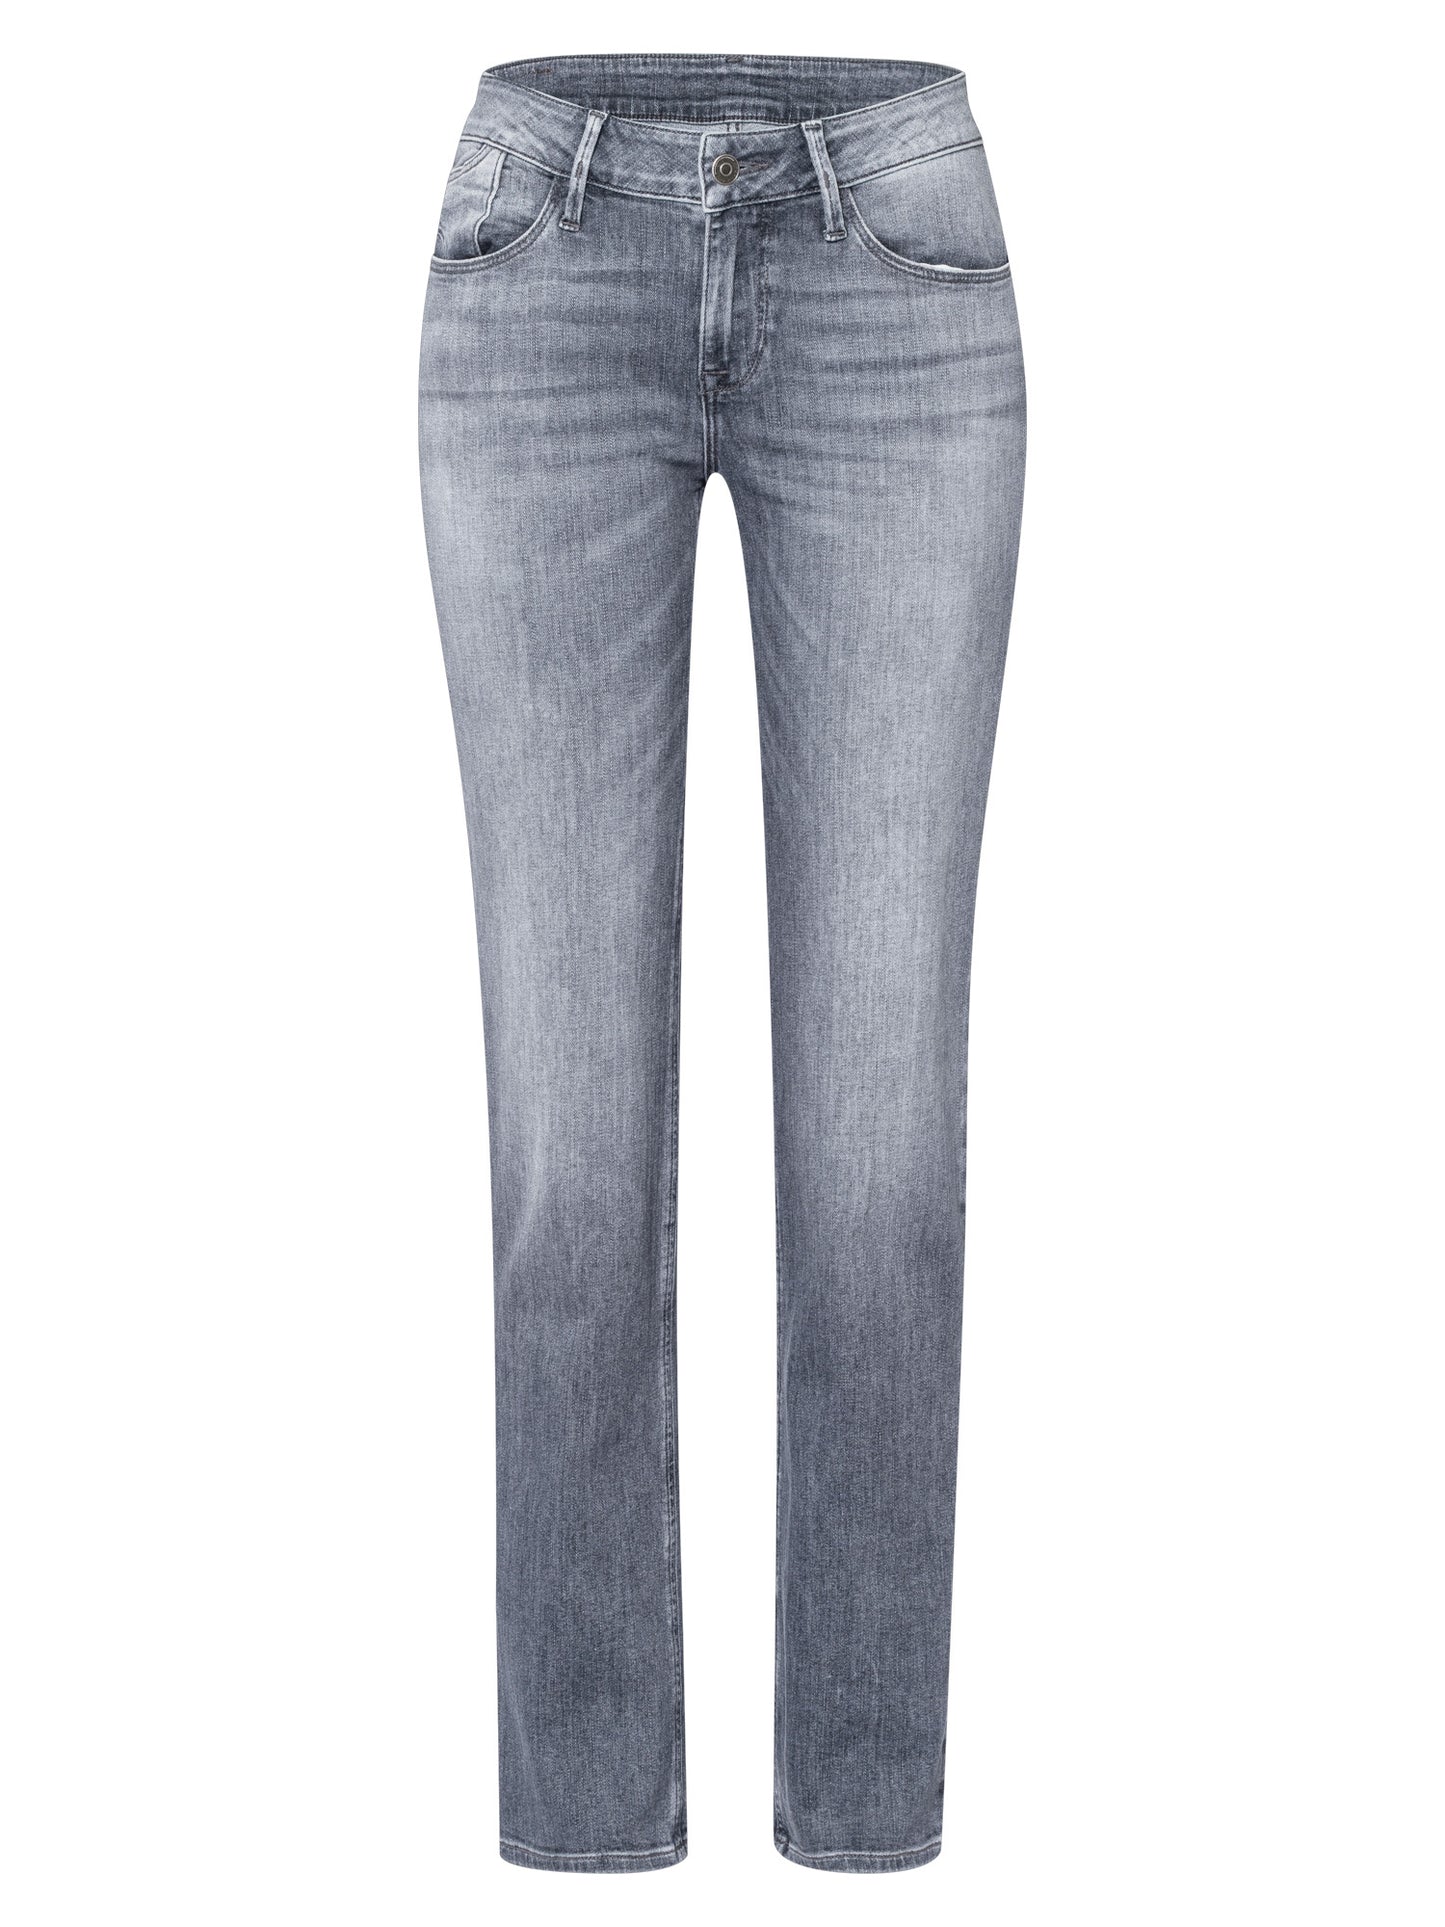 Rose women's jeans regular fit high waist grey